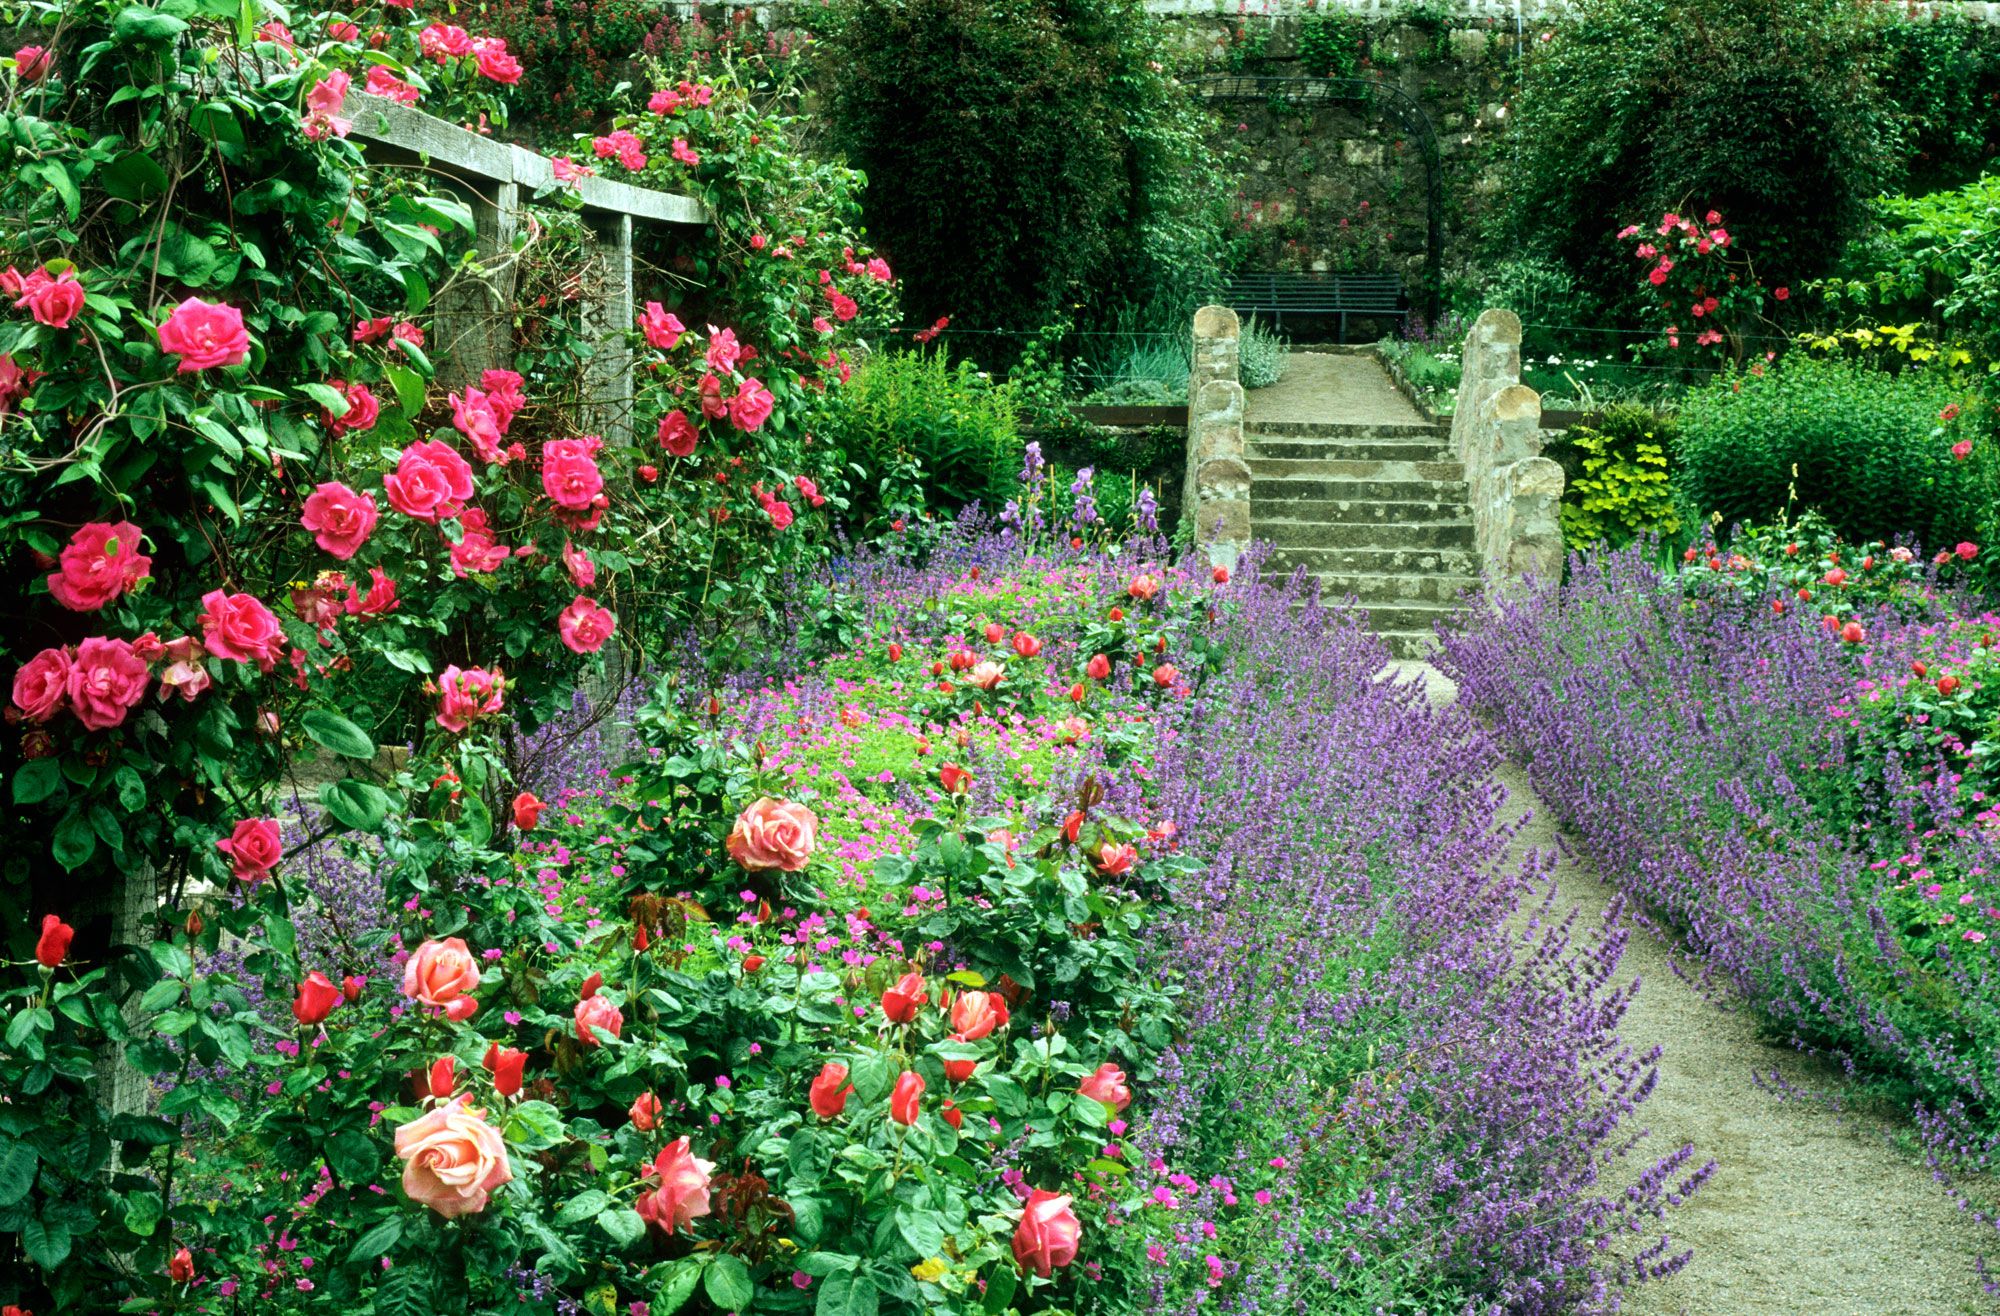 Briljant Corroderen fluweel 9 Cottage Style Garden Ideas - Gardening Ideas